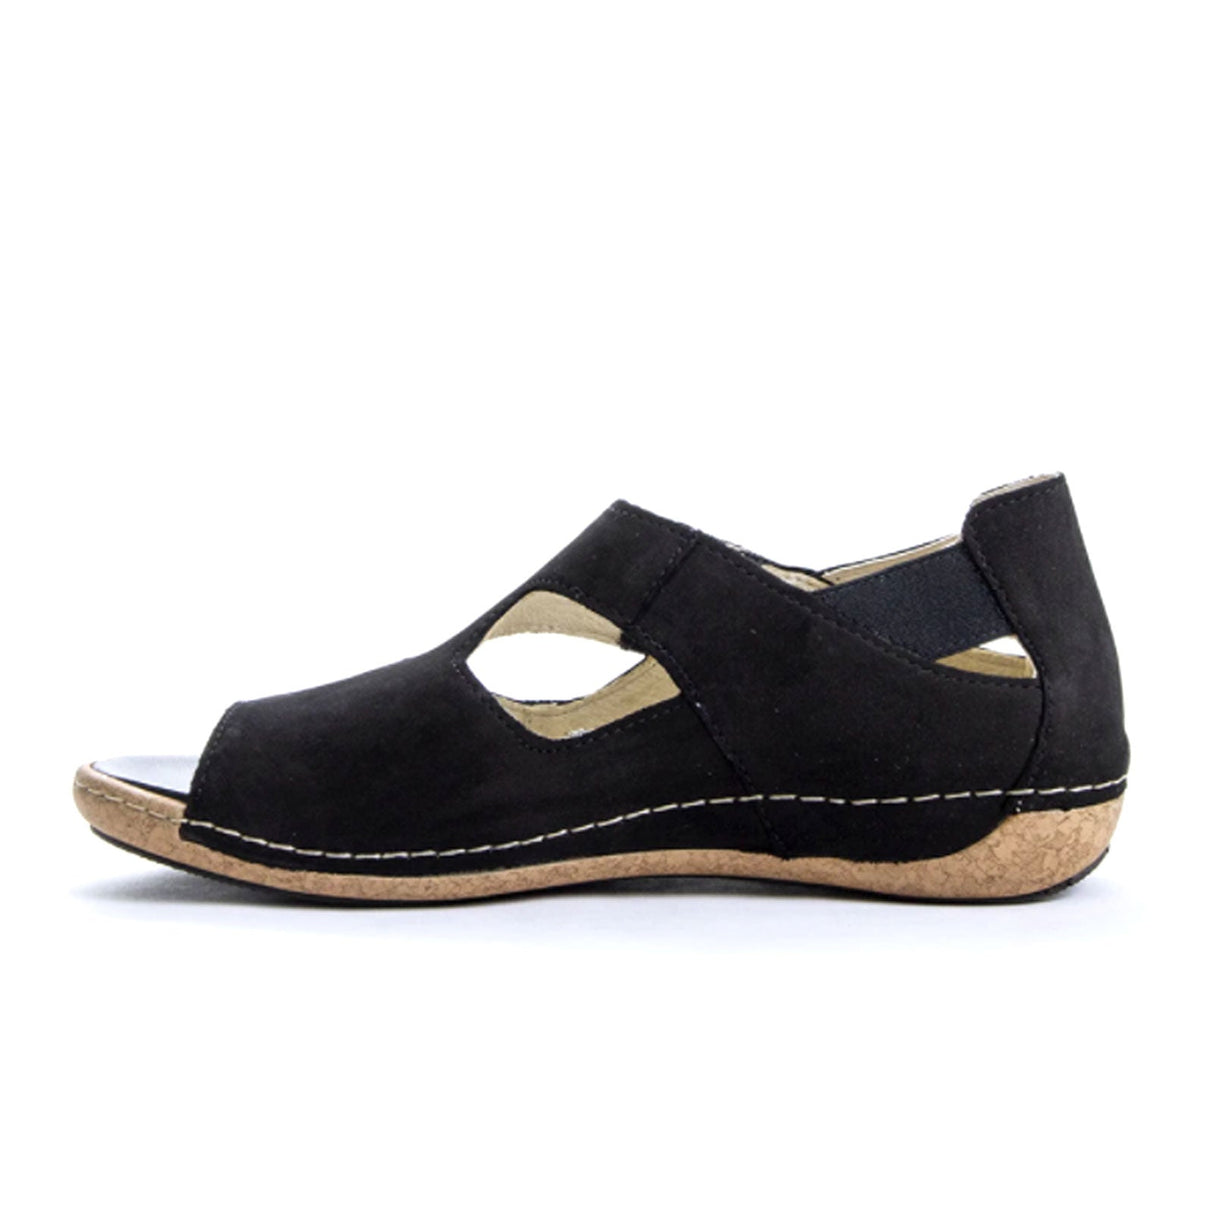 Waldlaufer Bailey 342004 Backstrap Sandal (Women) - Black Sandals - Backstrap - The Heel Shoe Fitters